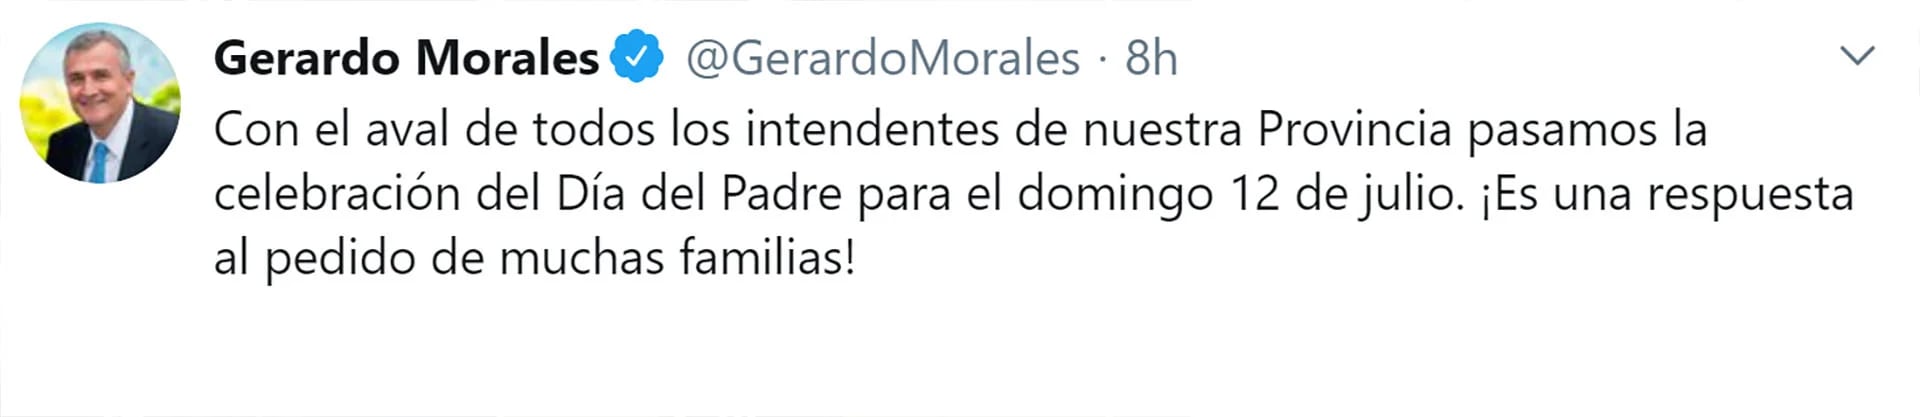 El anuncio de Gerardo Morales en su cuenta de Twitter.